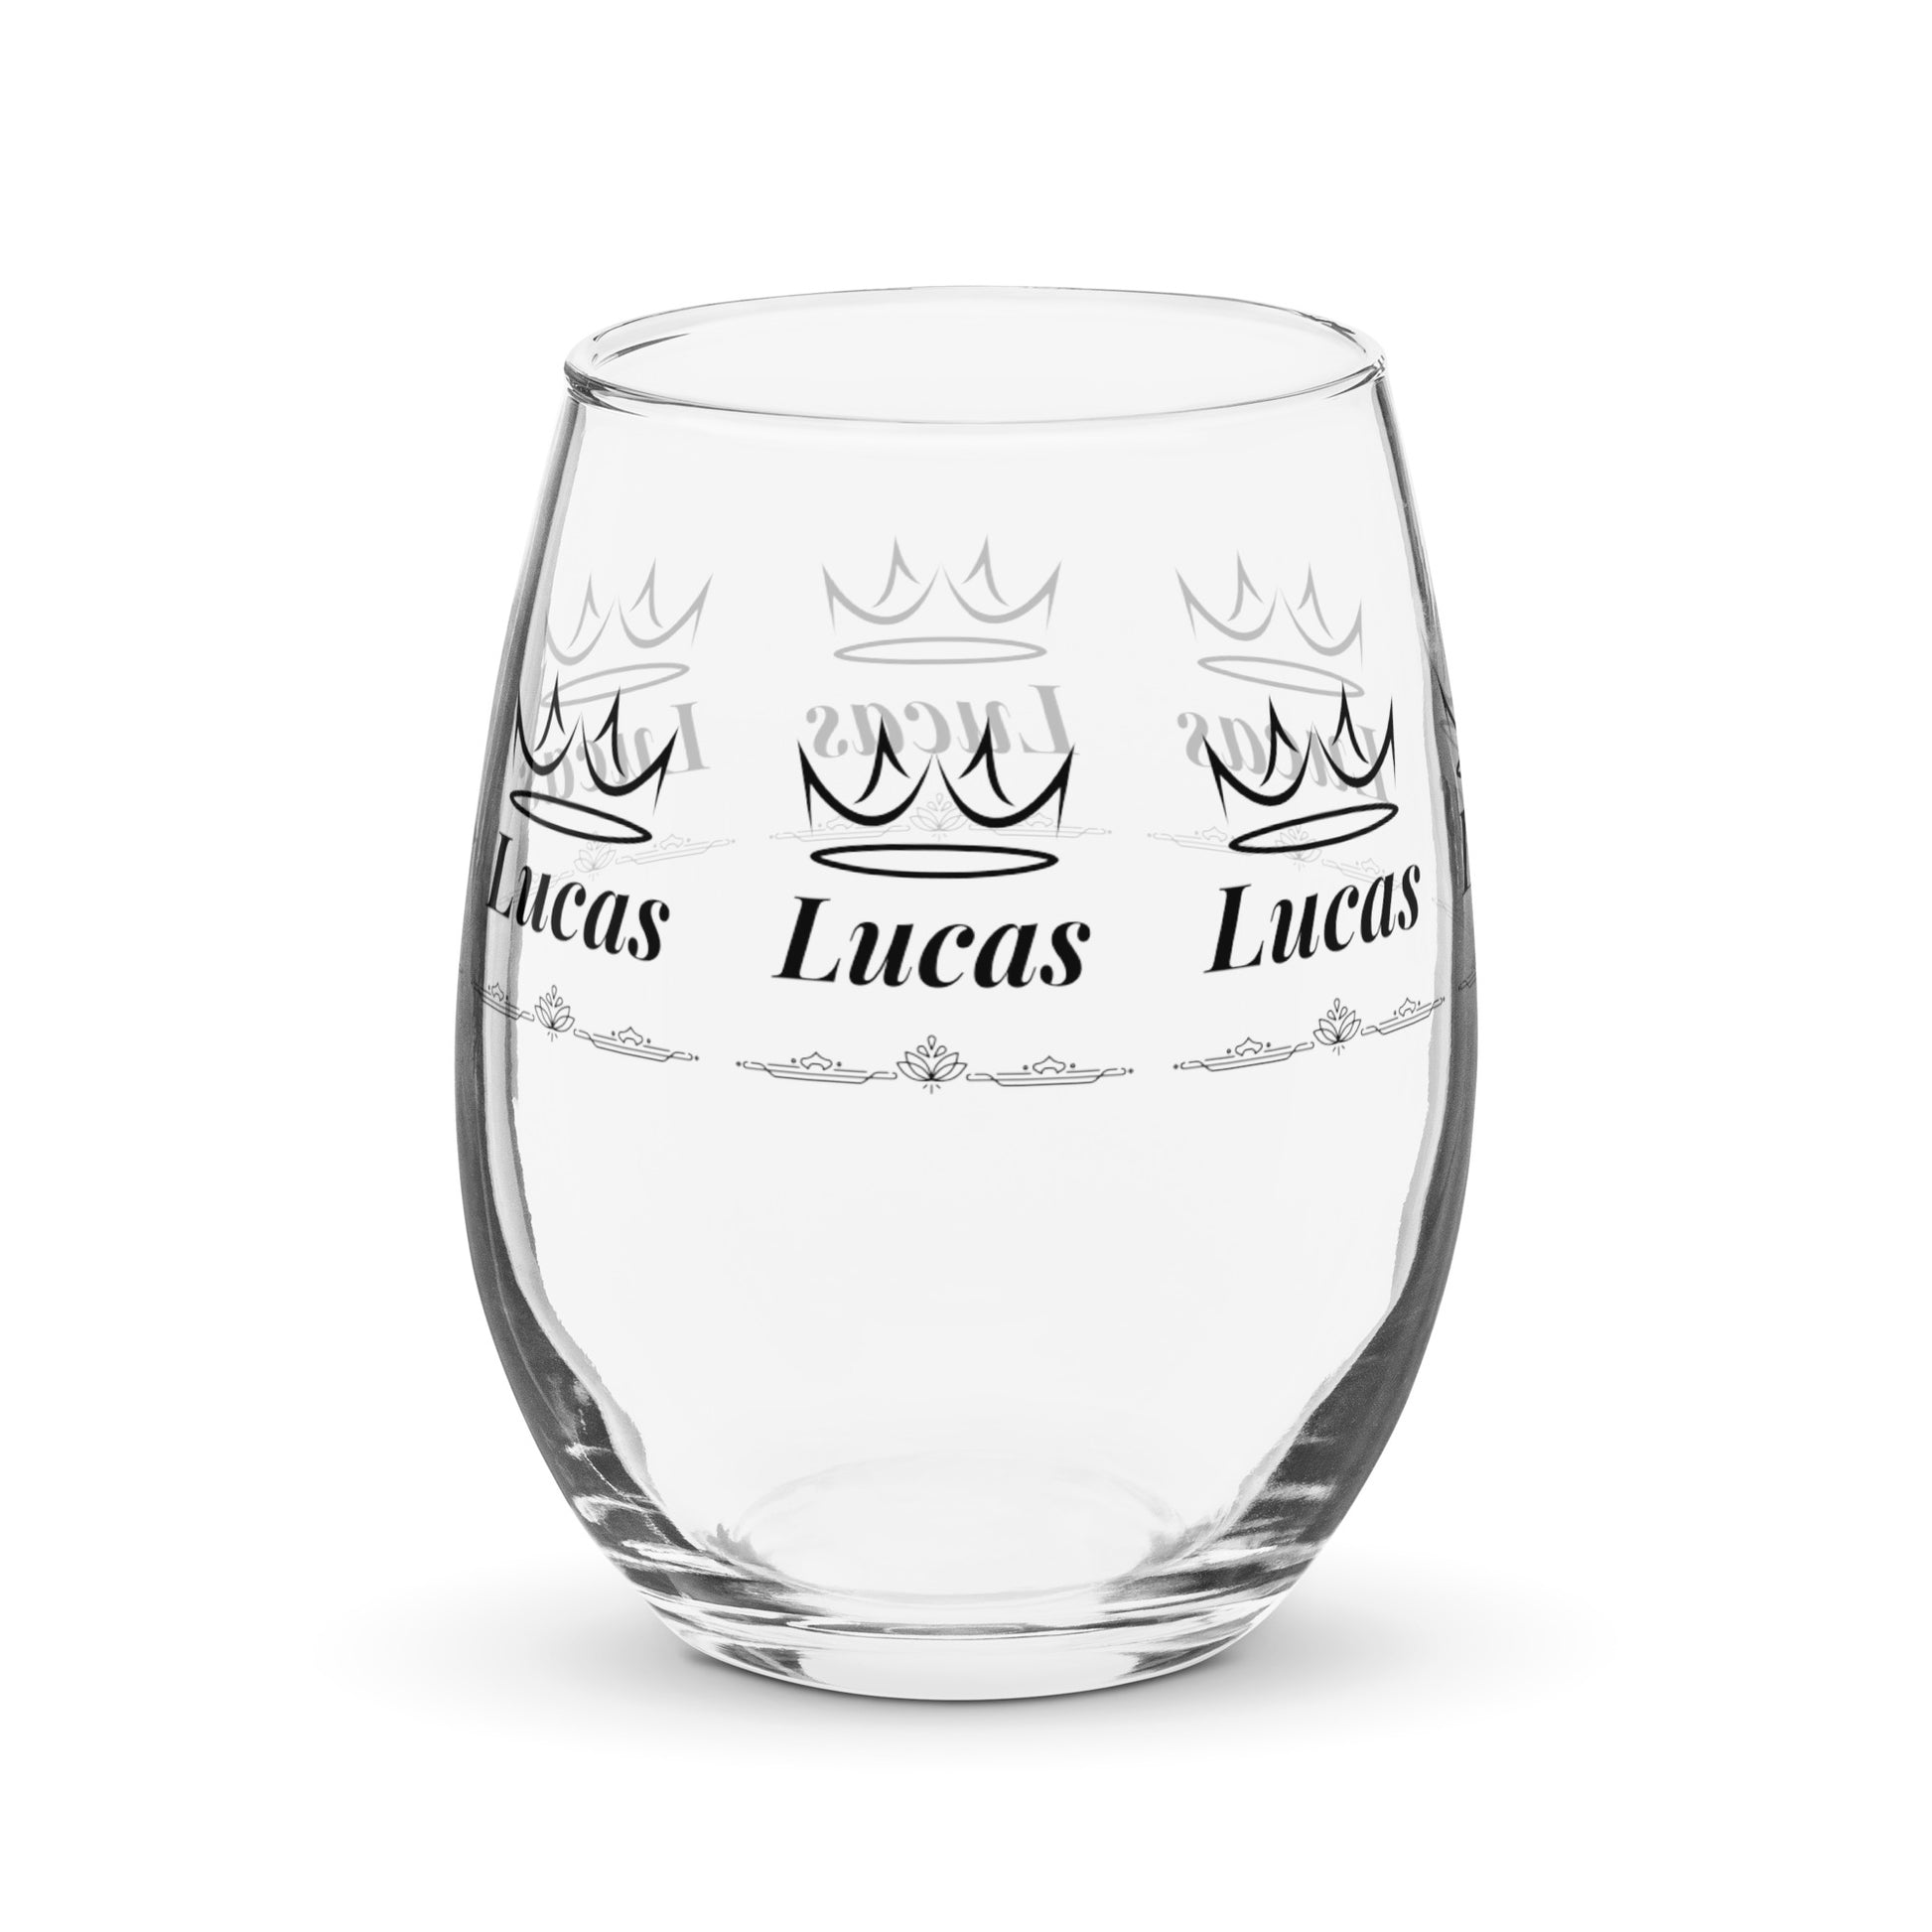 Lucas name wine glass personalized wine glass wine glass